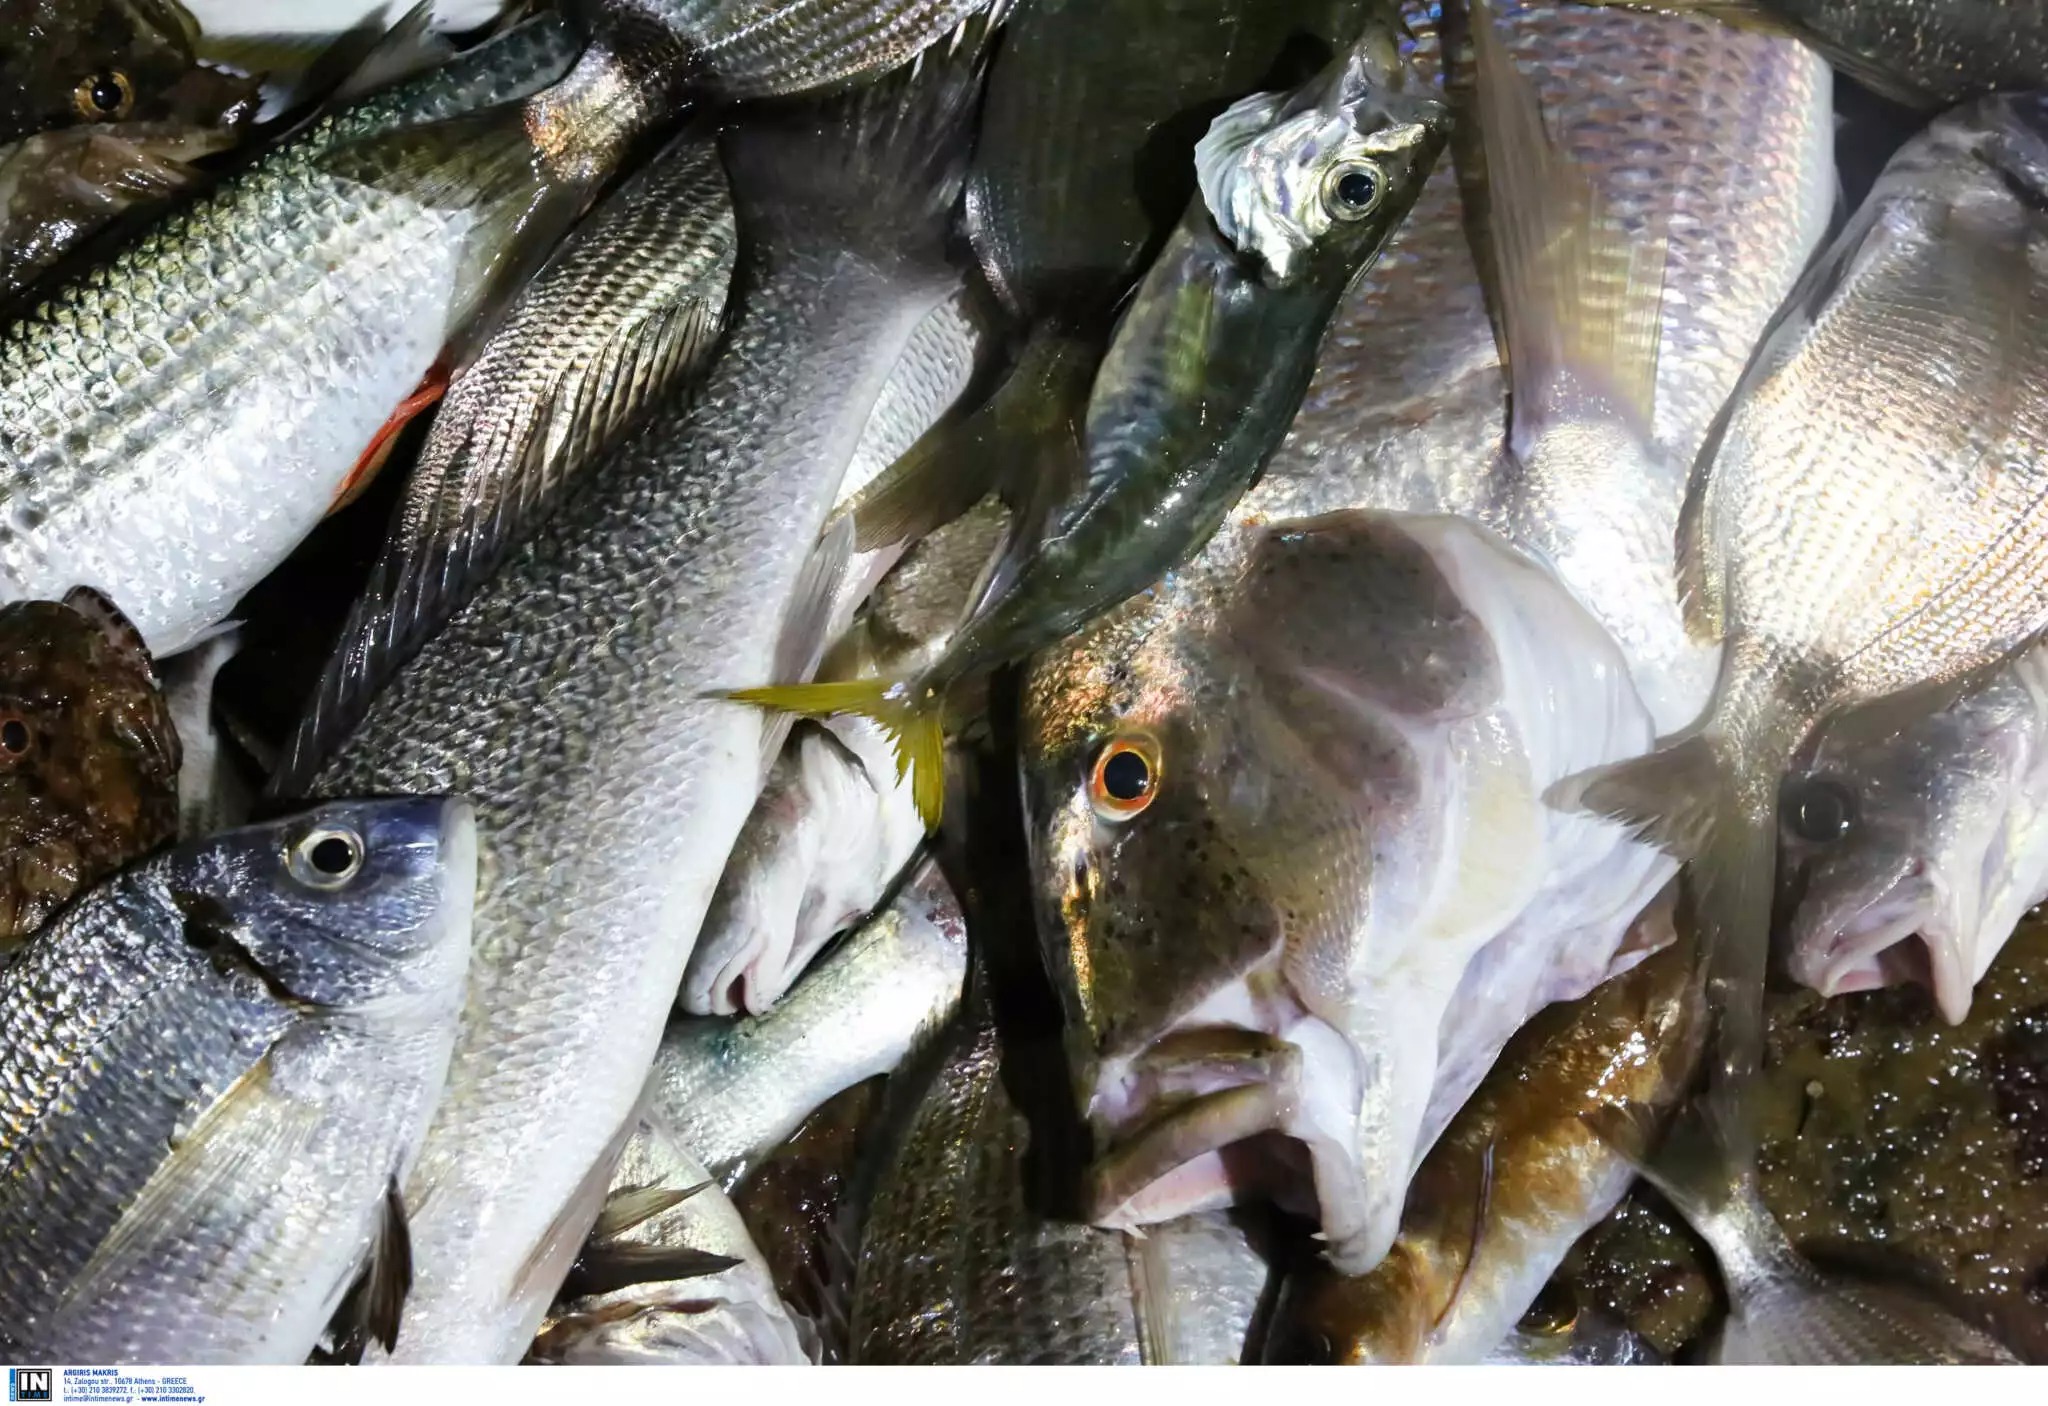 Κάρπαθος: «Μεμονωμένο συμβάν, δεν αποτελεί πρακτική μας ο βασανισμός ζώων», λέει η ταβέρνα για το τηγάνισμα ζωντανών ψαριών